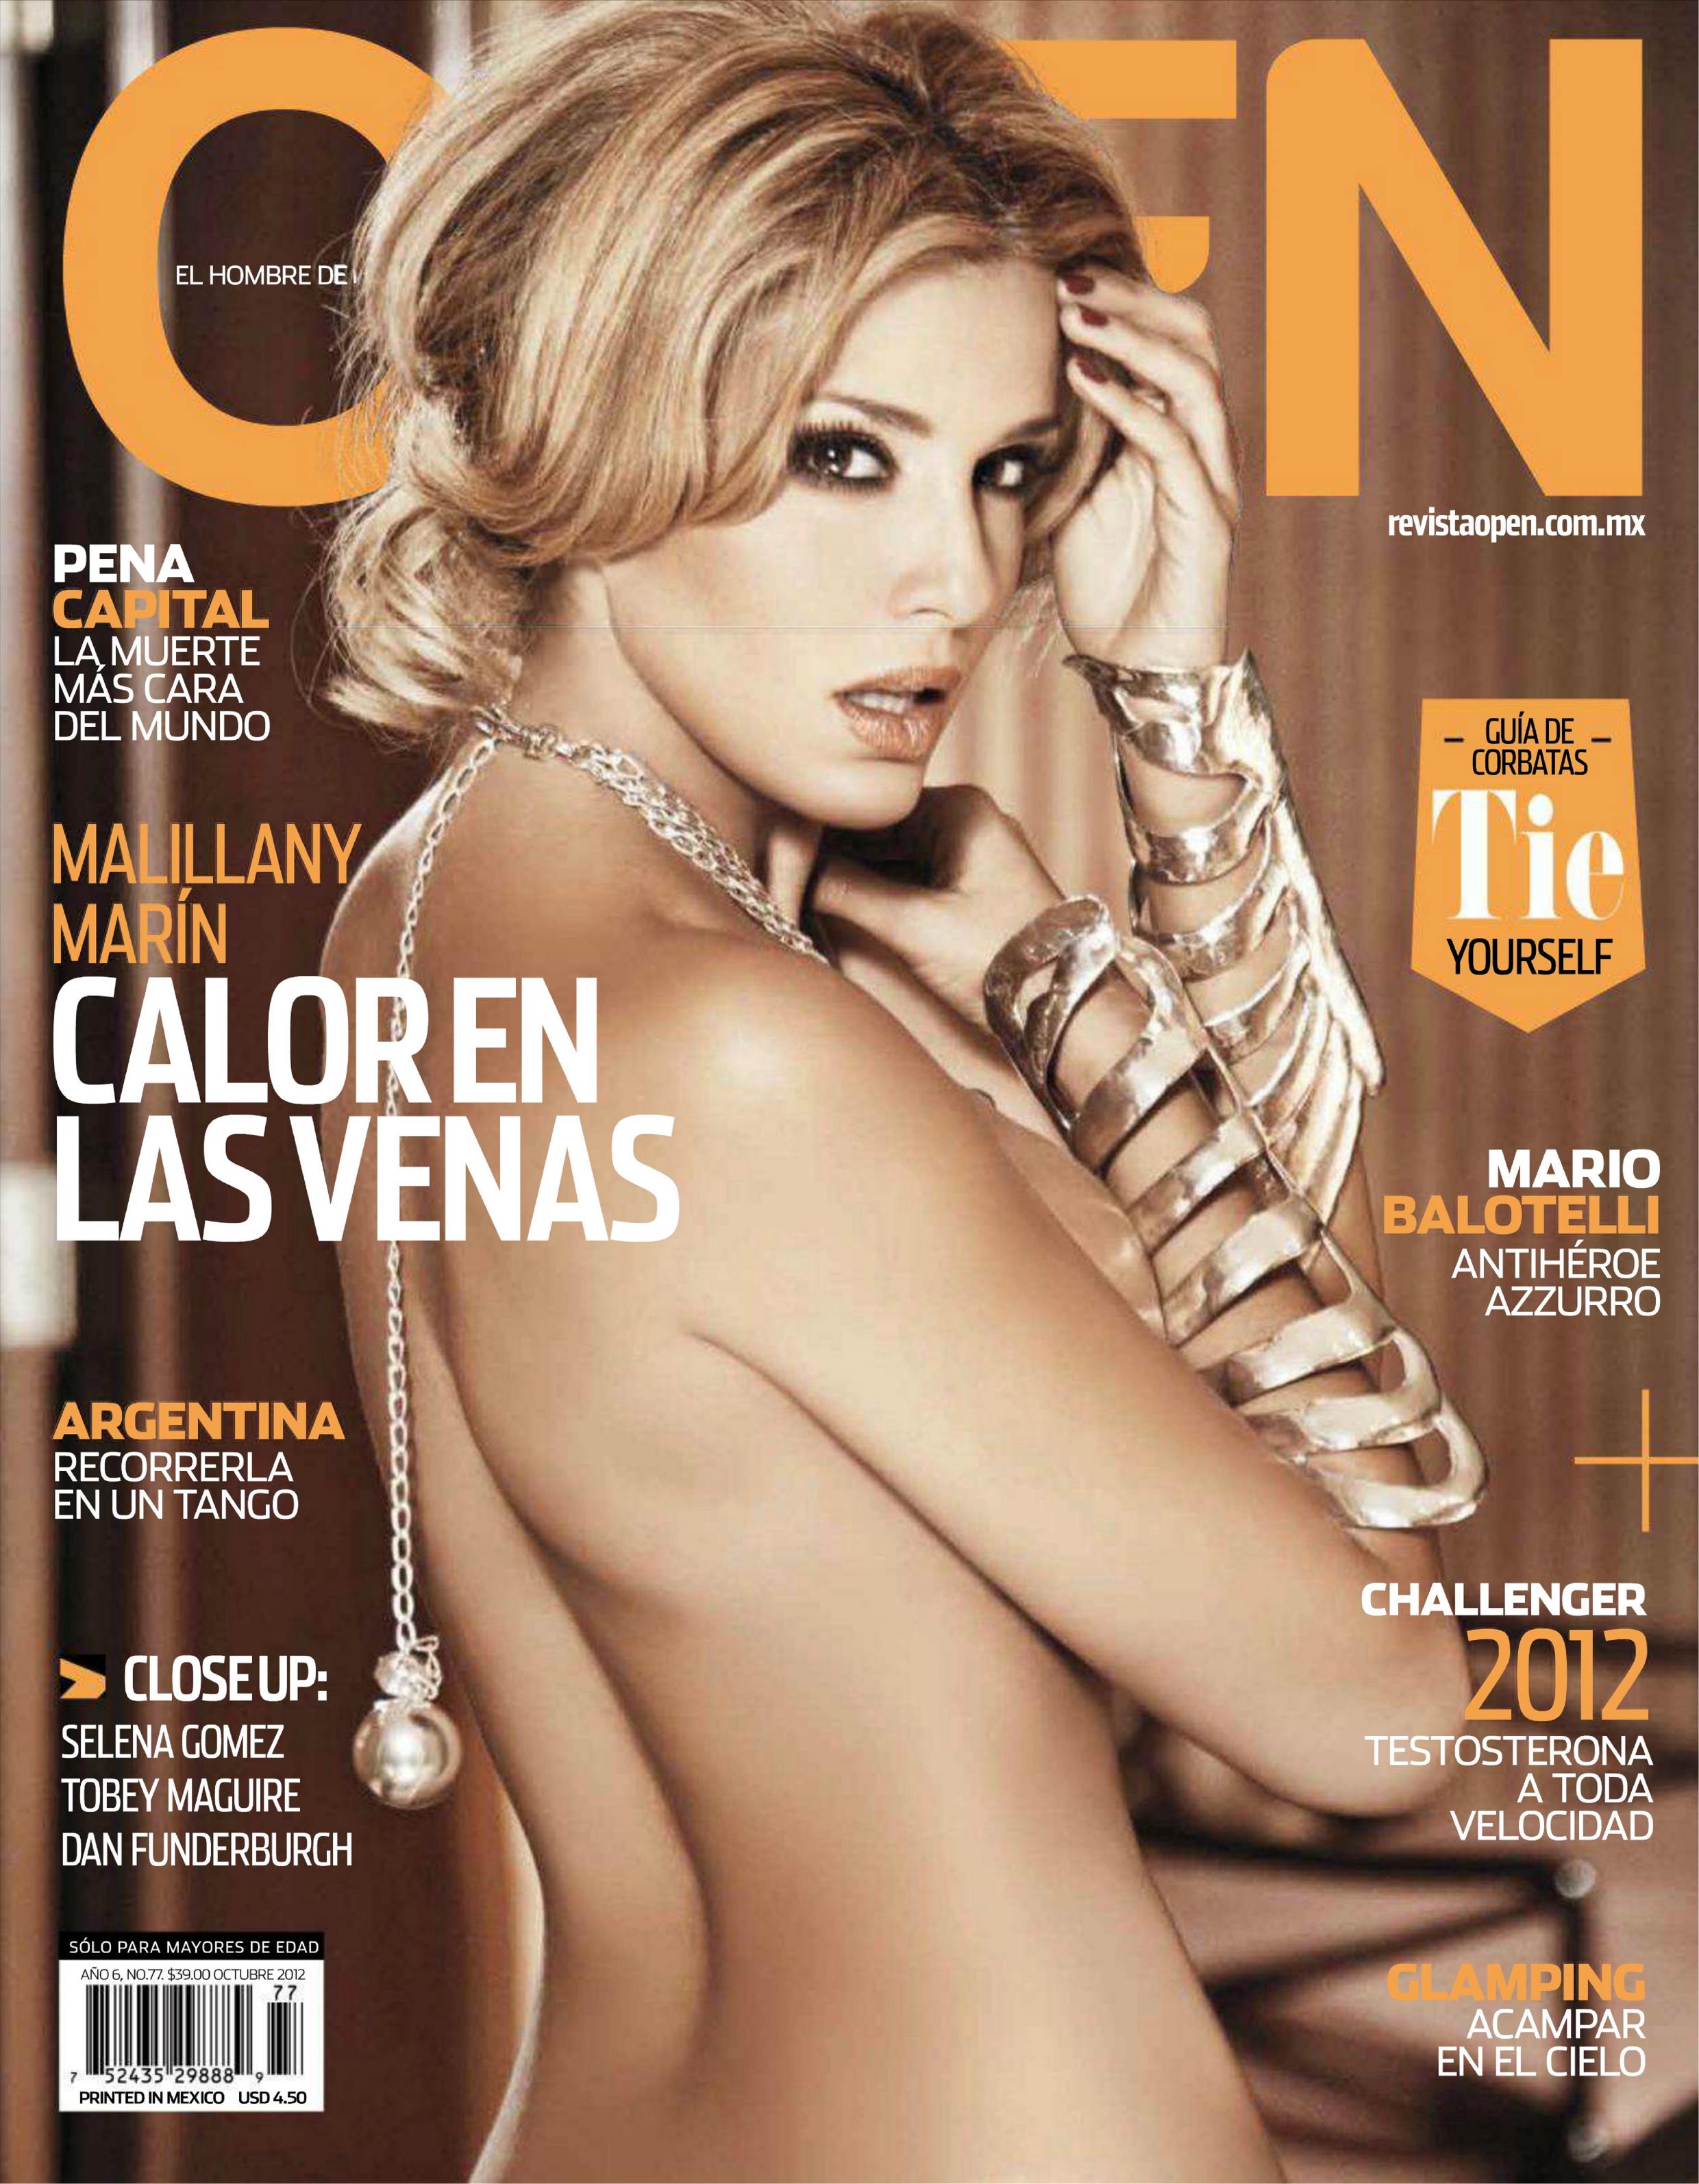 Malillany Marin for Open Magazine Mexico